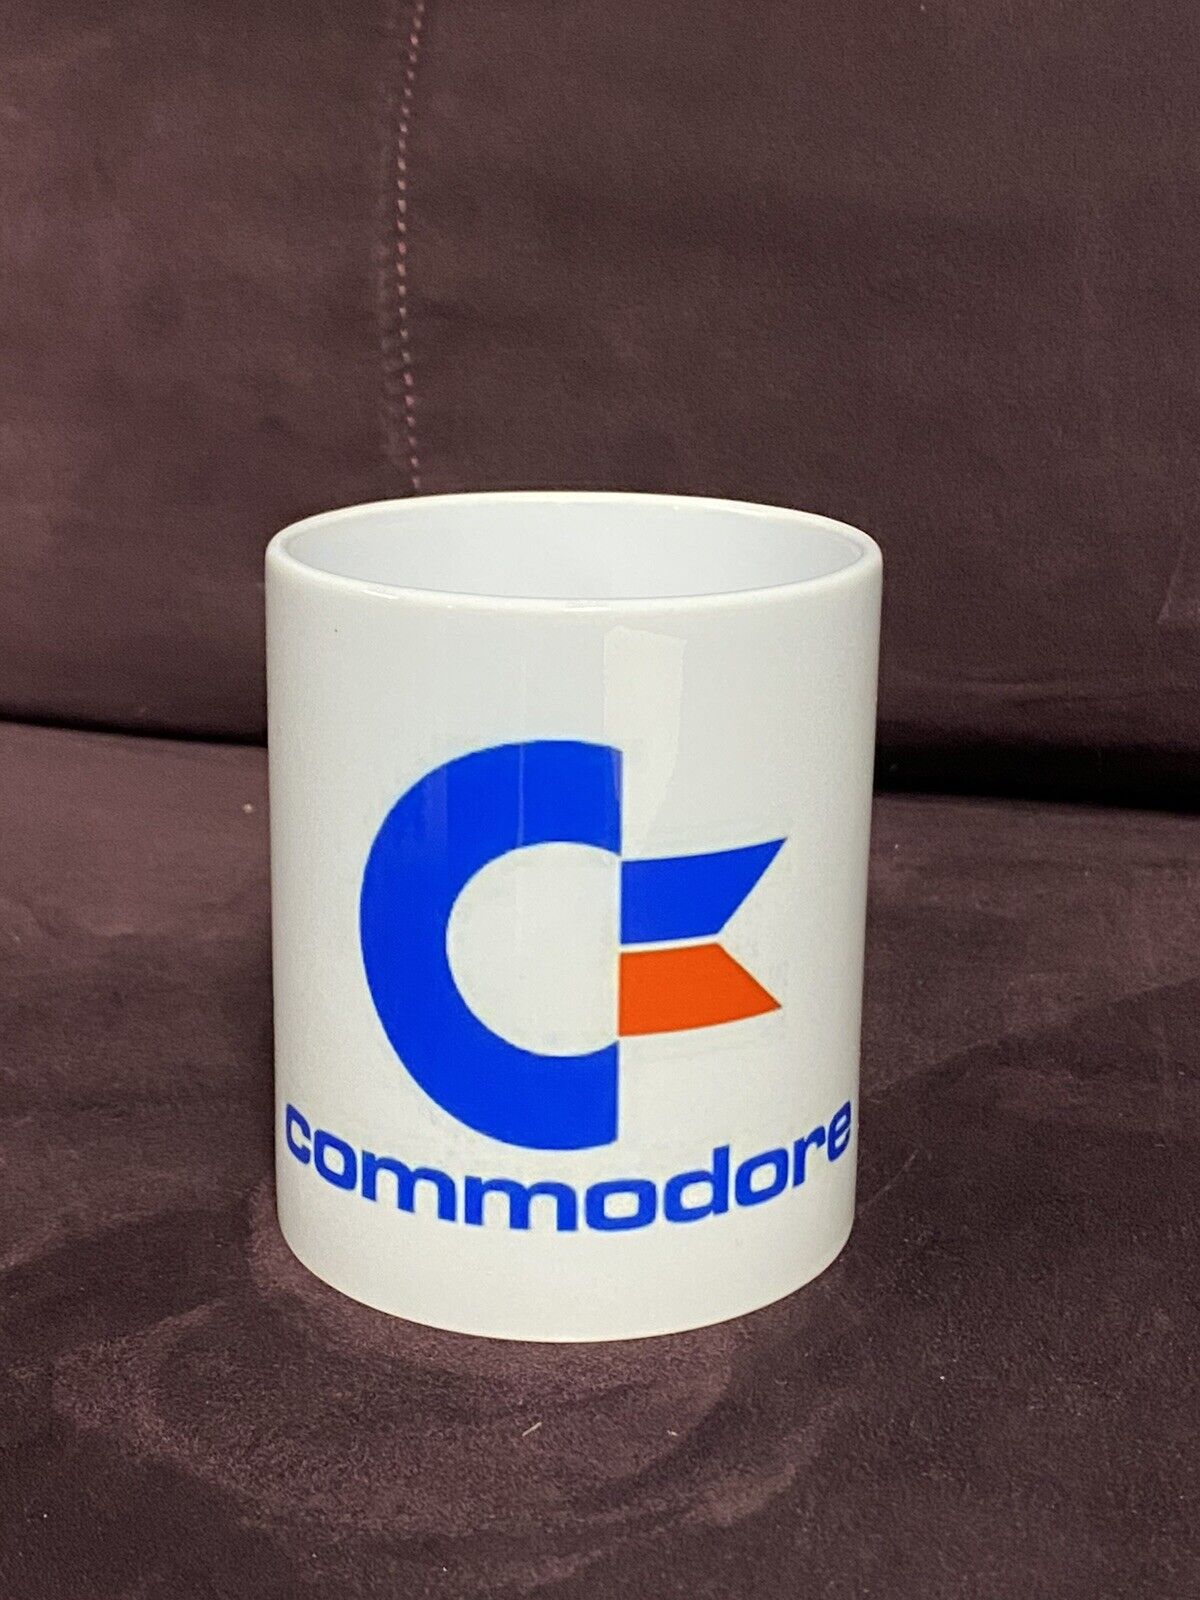 Commodore Computer Mug.  Commodore 64 128 New